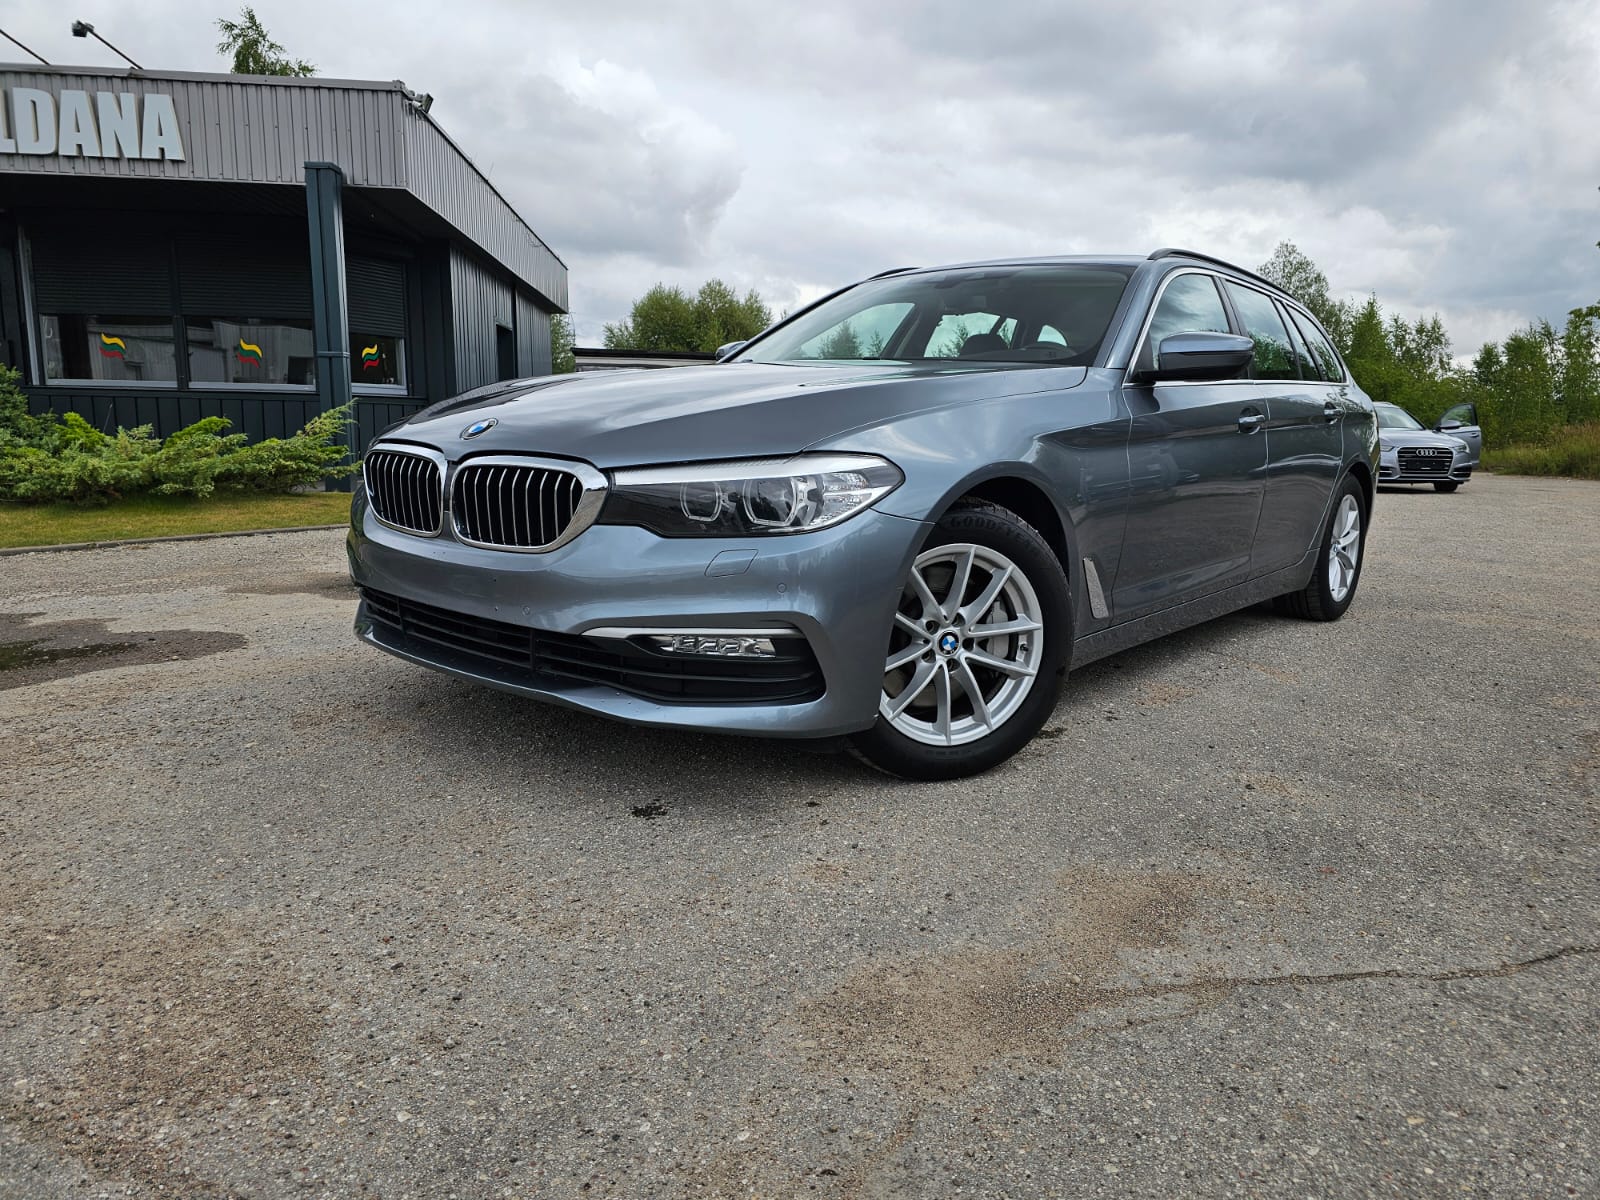 BMW 530, 3.0 l., universalas, 2018-07/naudoti automobiliai/Roldana